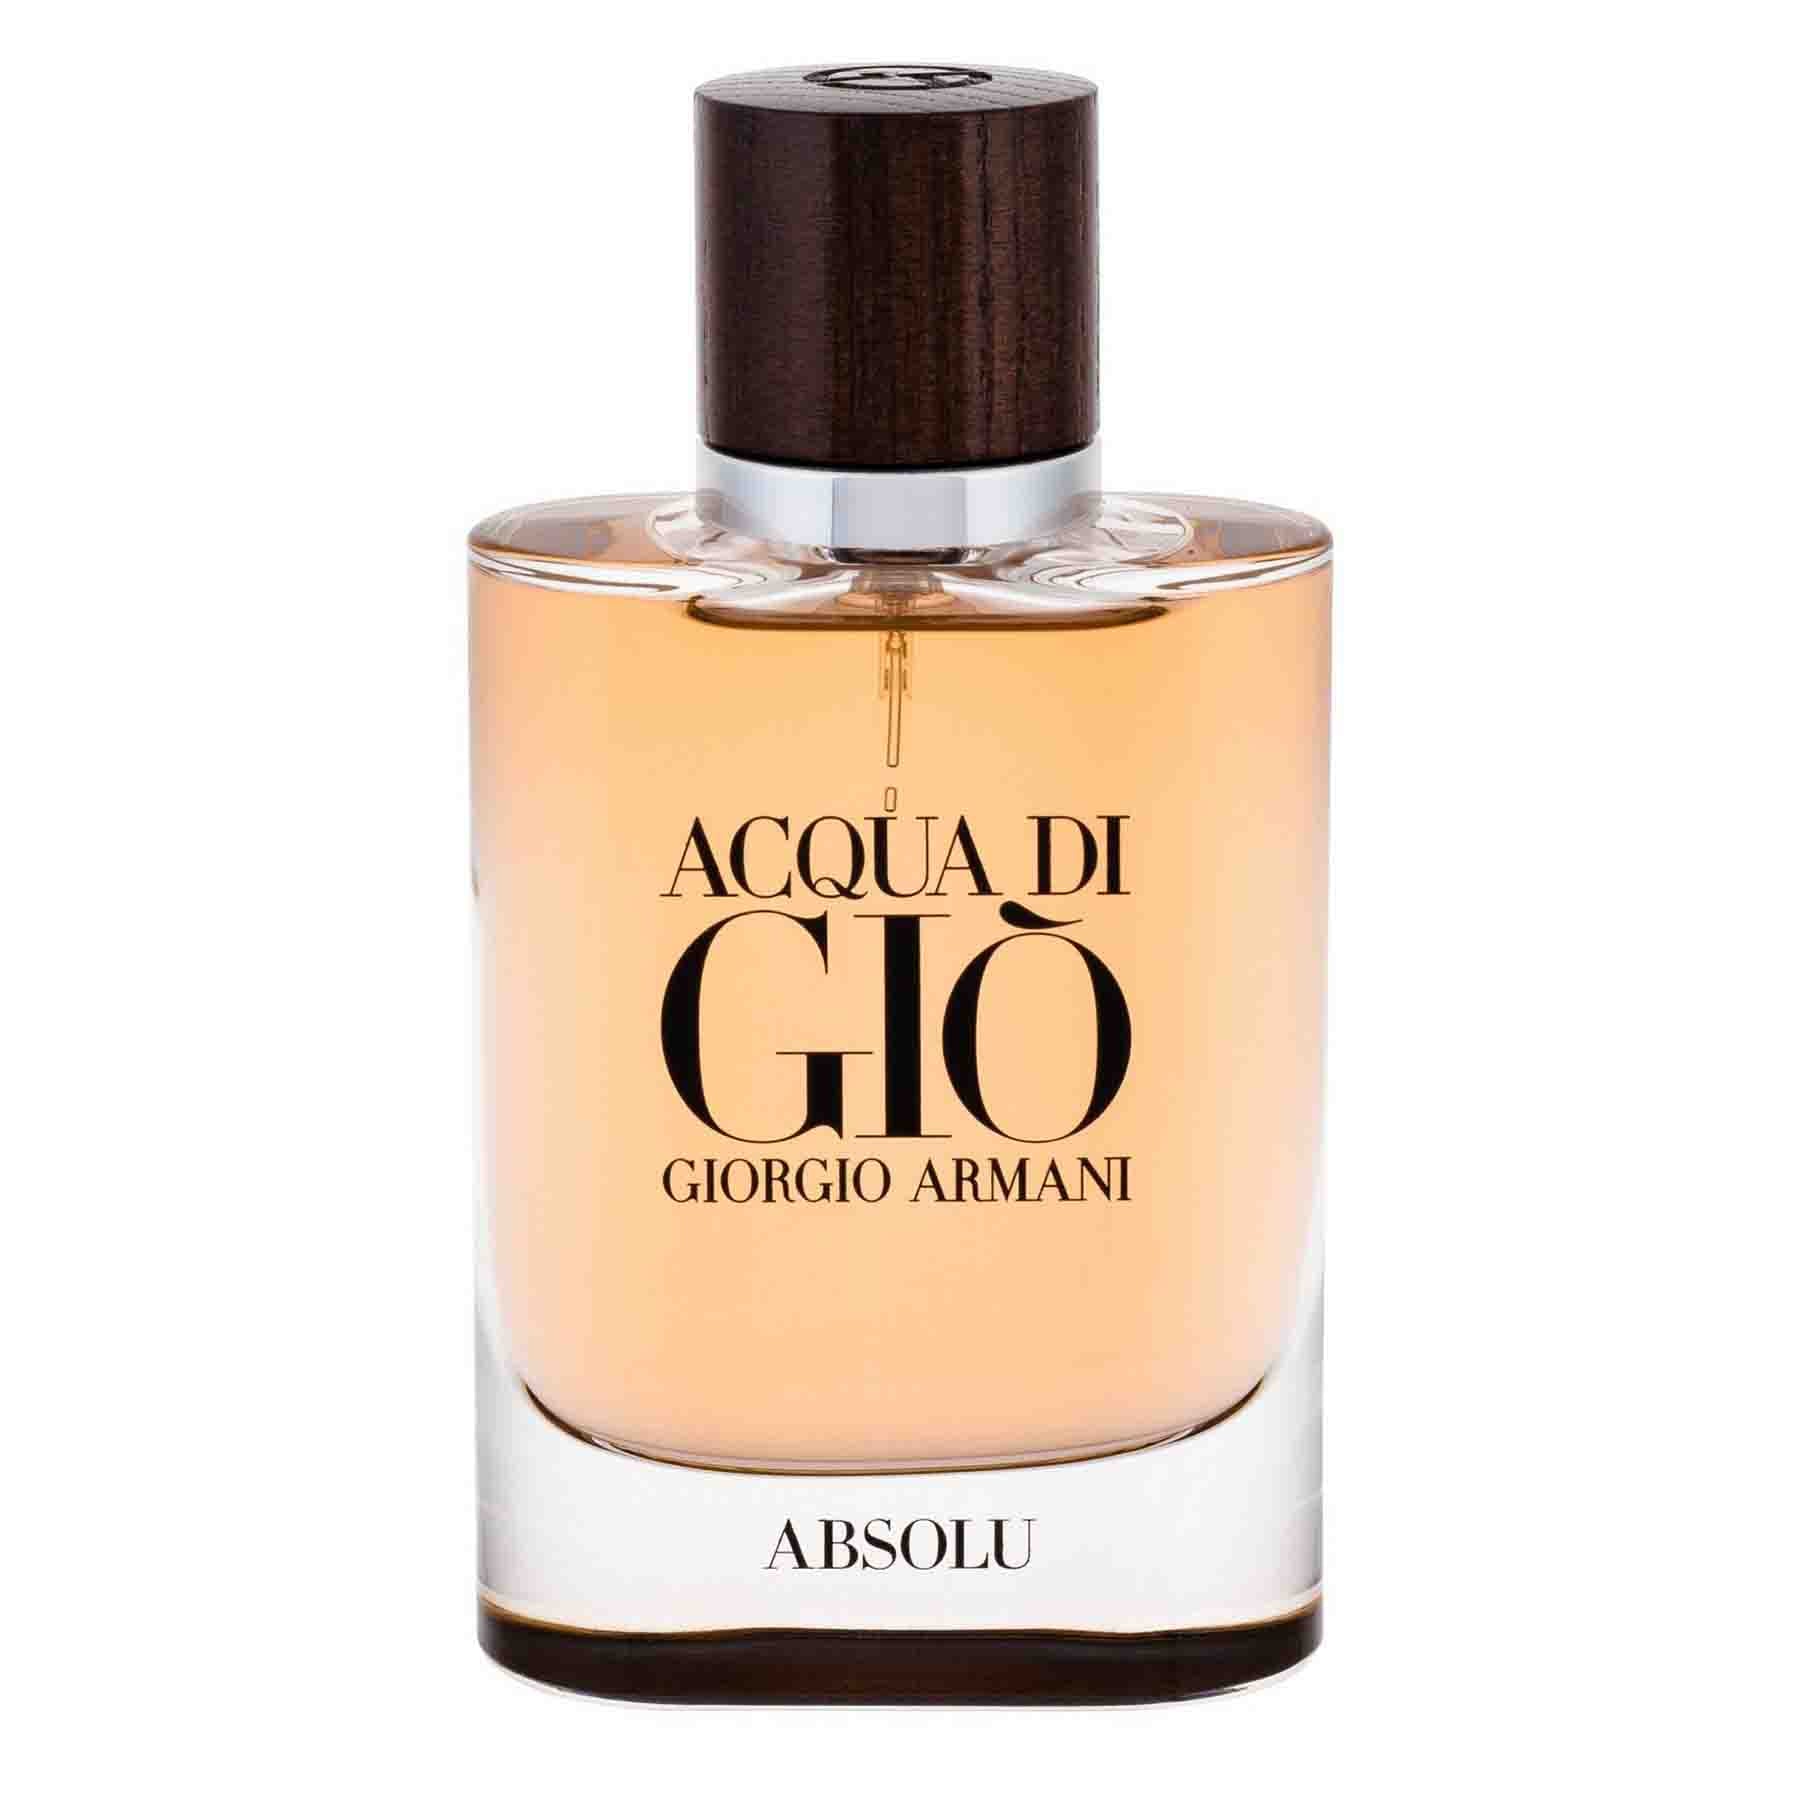 Giorgio Armani is a Aqua Eau Gio Eau de Parfum 